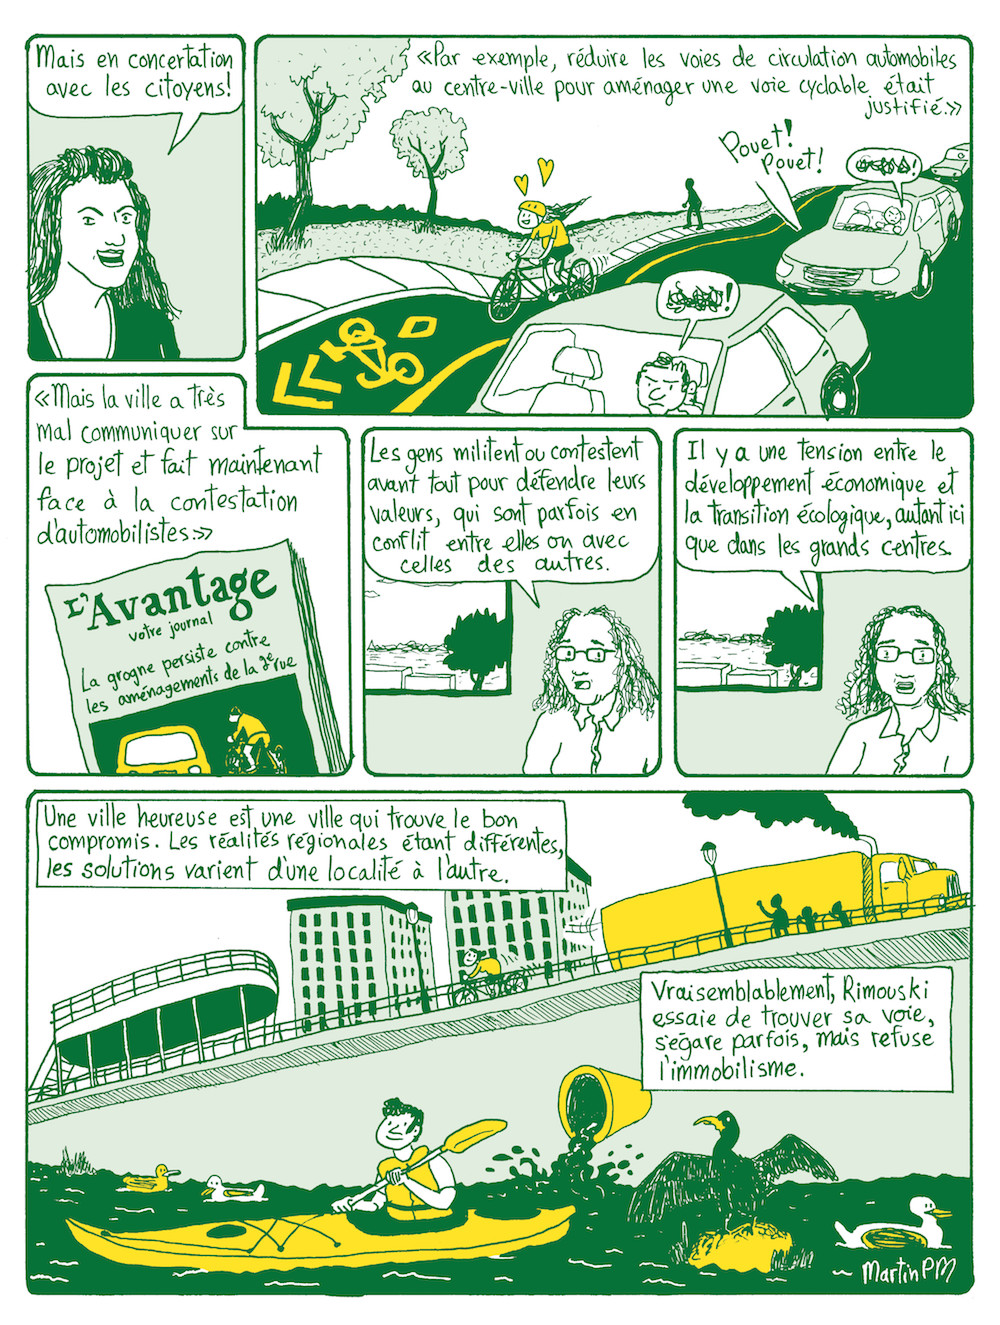 Page 11 du bédéreportage Le Bonheur en transition, au sujet de la transition environnementale à Rimouski